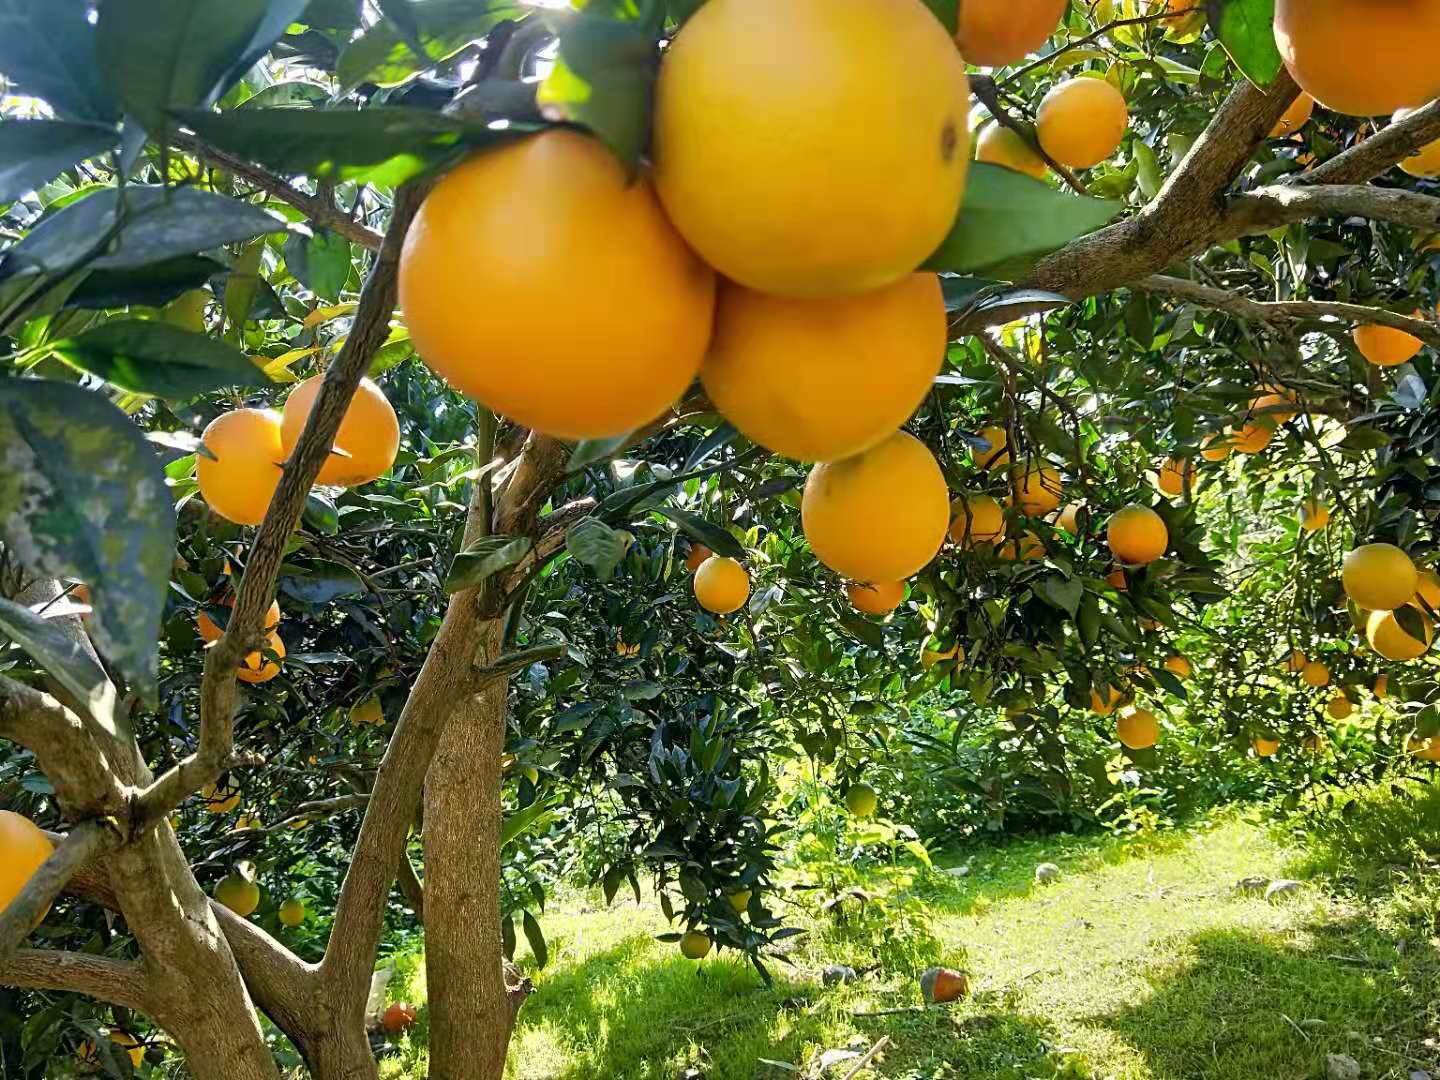 重庆纽荷尔脐橙厂家/纽荷尔脐橙种植基地/纽荷尔脐橙批发价格/纽荷尔脐橙图片